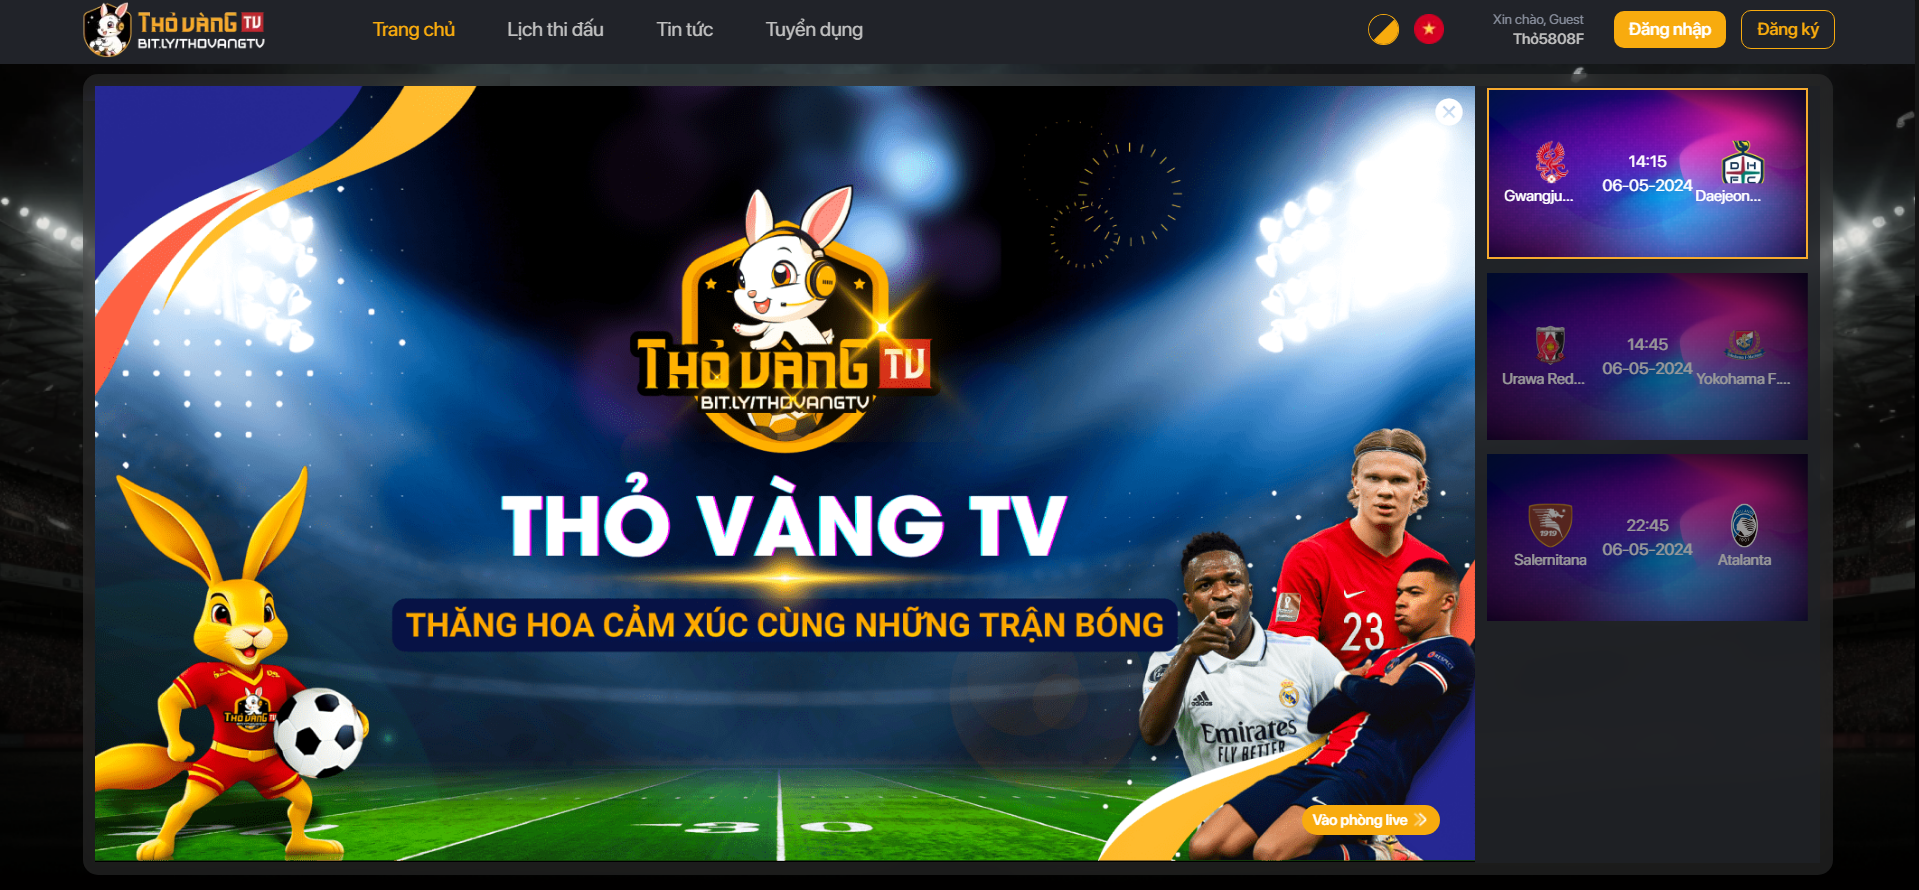 Xem bóng đá miễn phí tại Thovang TV